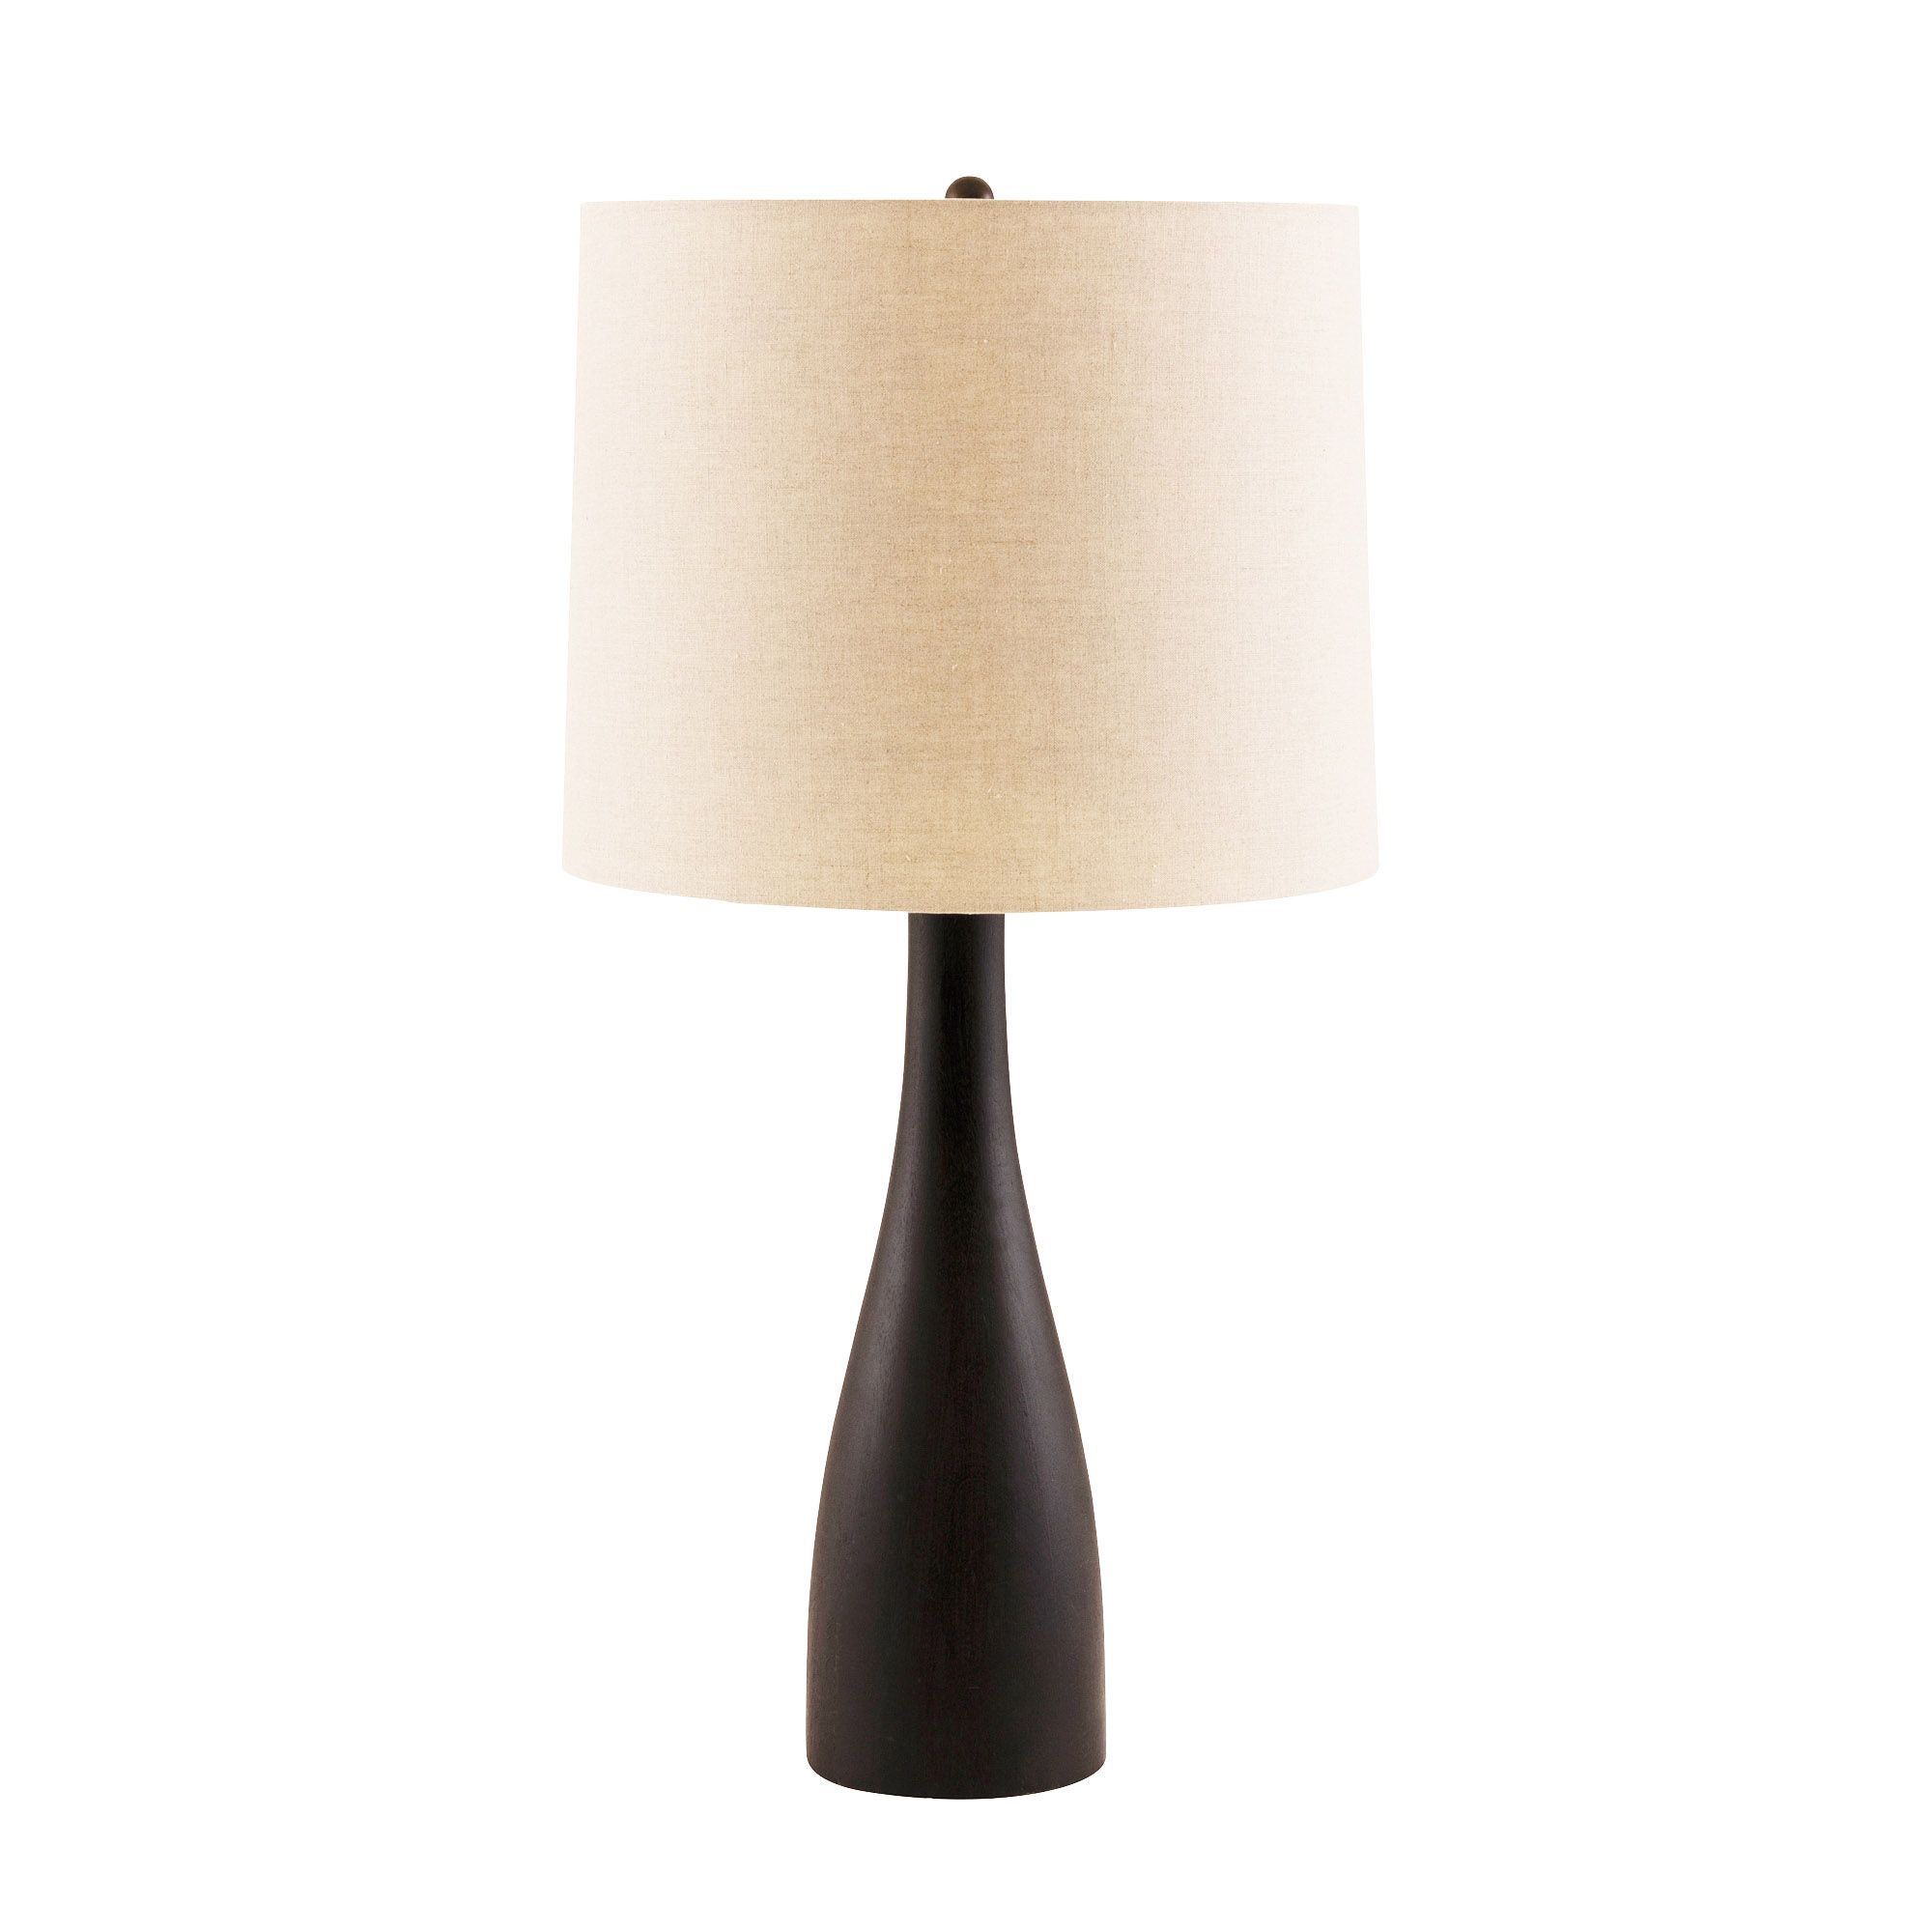 Купить Настольная лампа Truxton Lamp в интернет-магазине roooms.ru